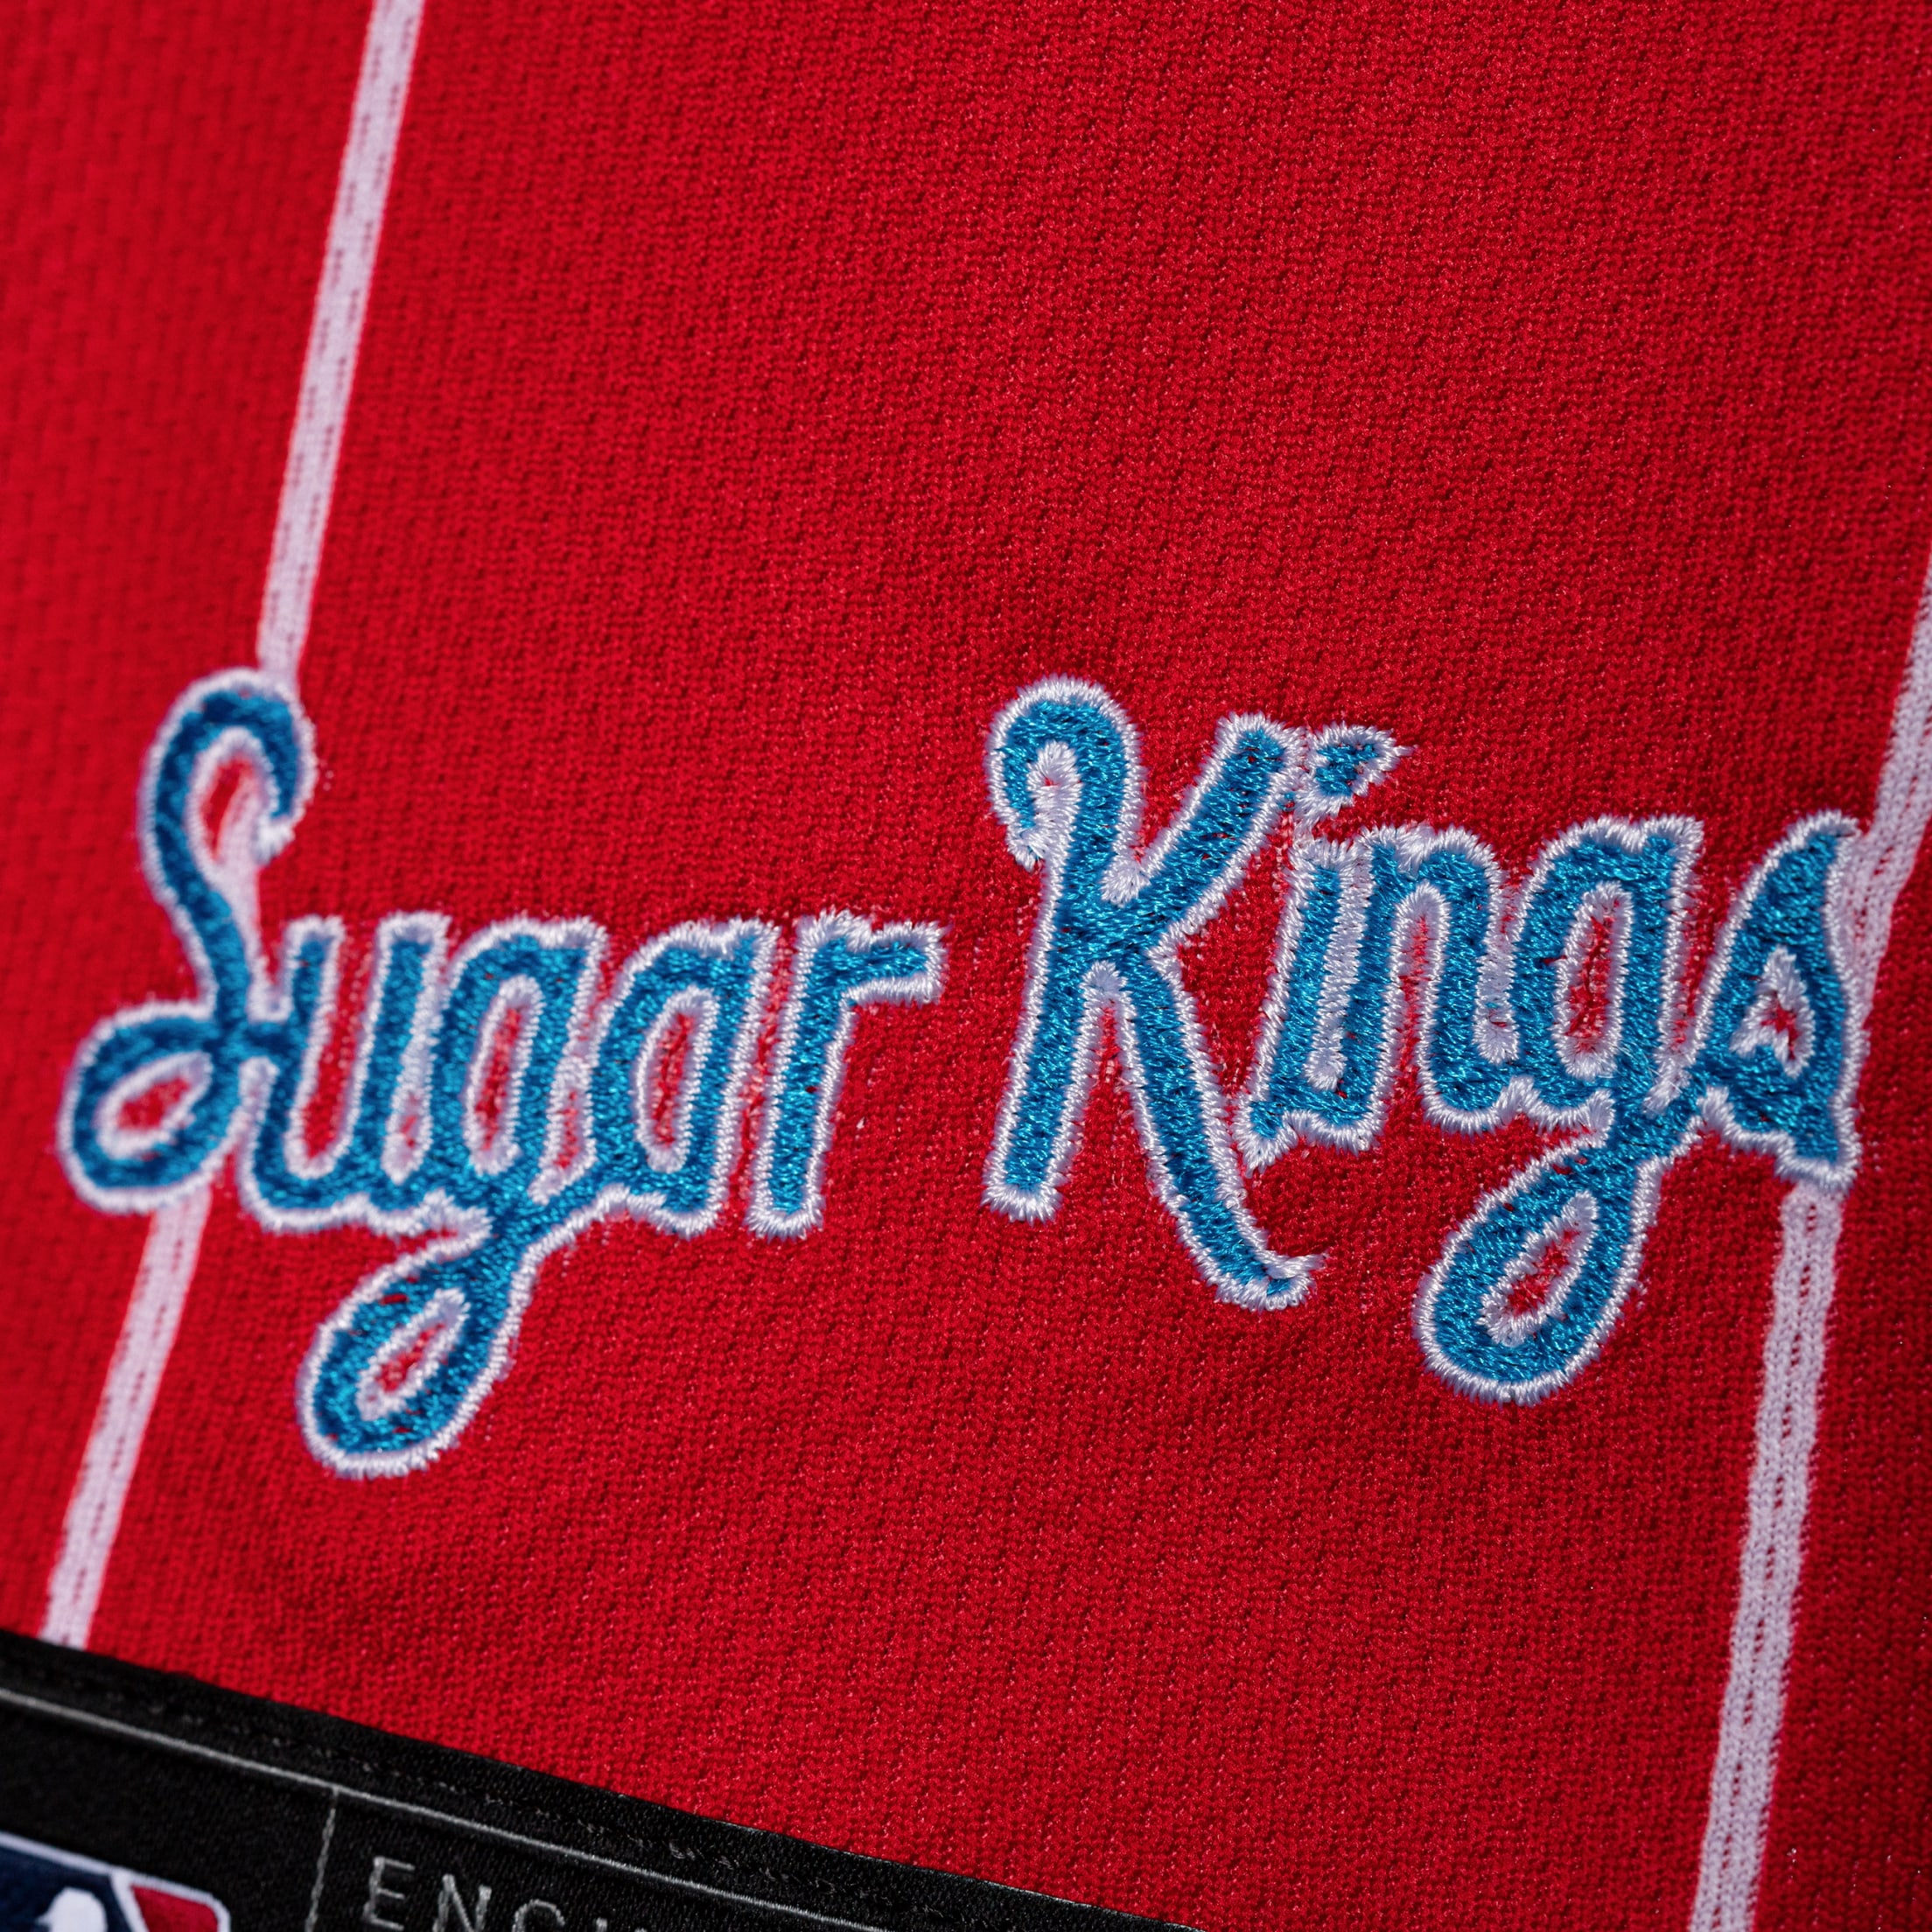 havana sugar kings jersey